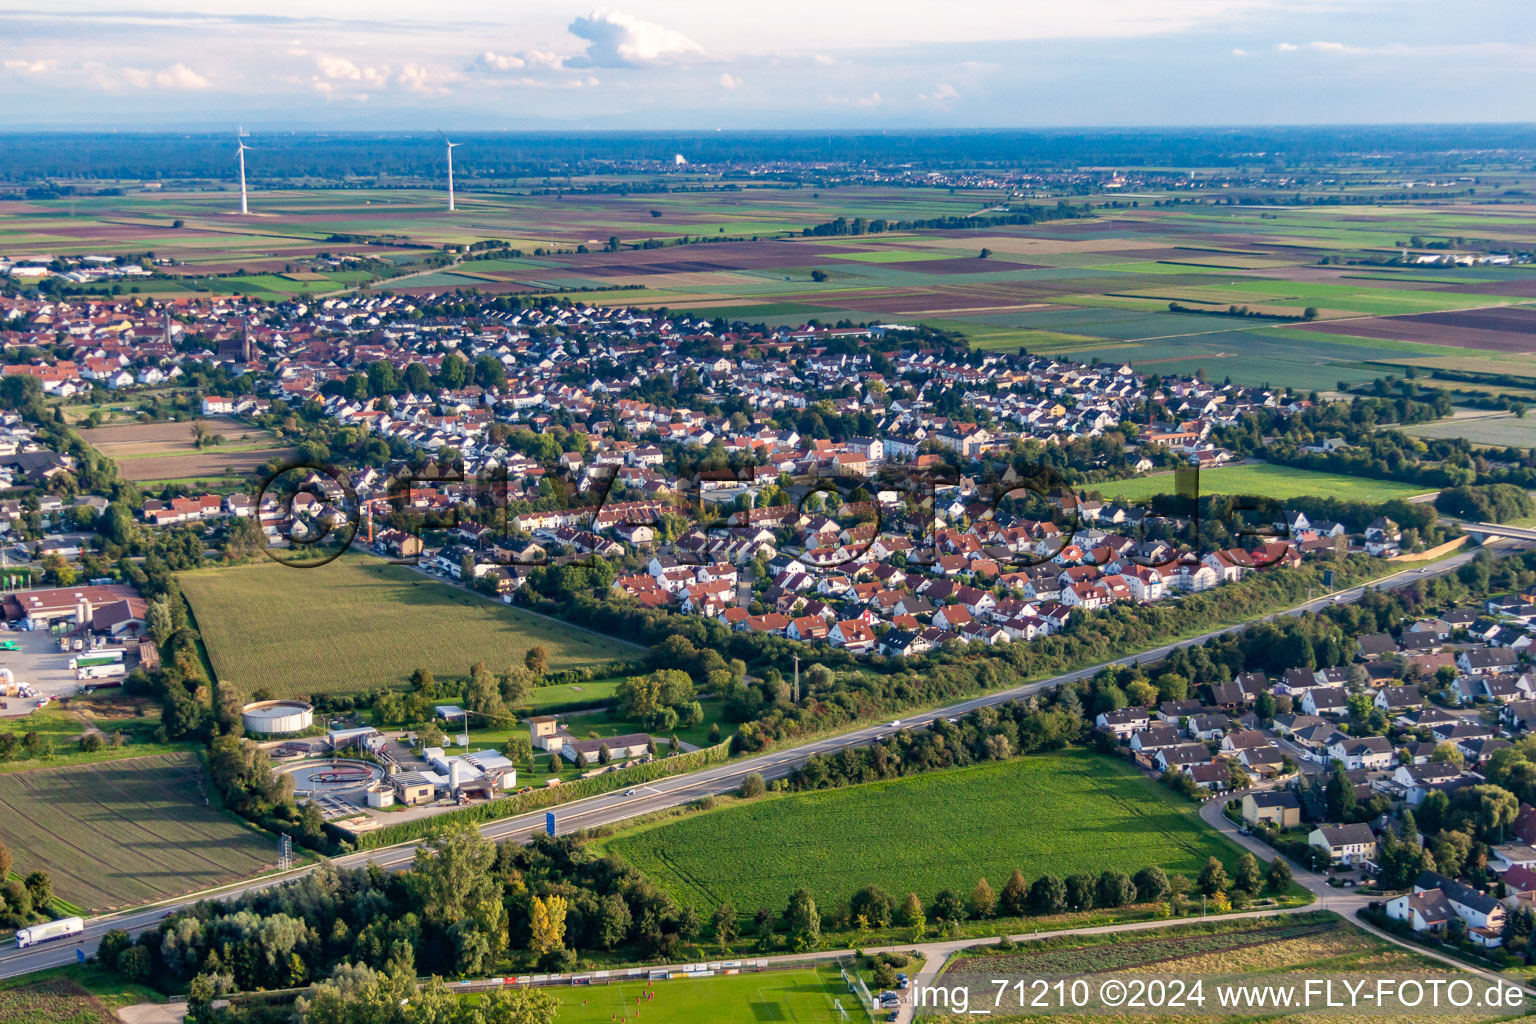 Drone recording of District Dannstadt in Dannstadt-Schauernheim in the state Rhineland-Palatinate, Germany